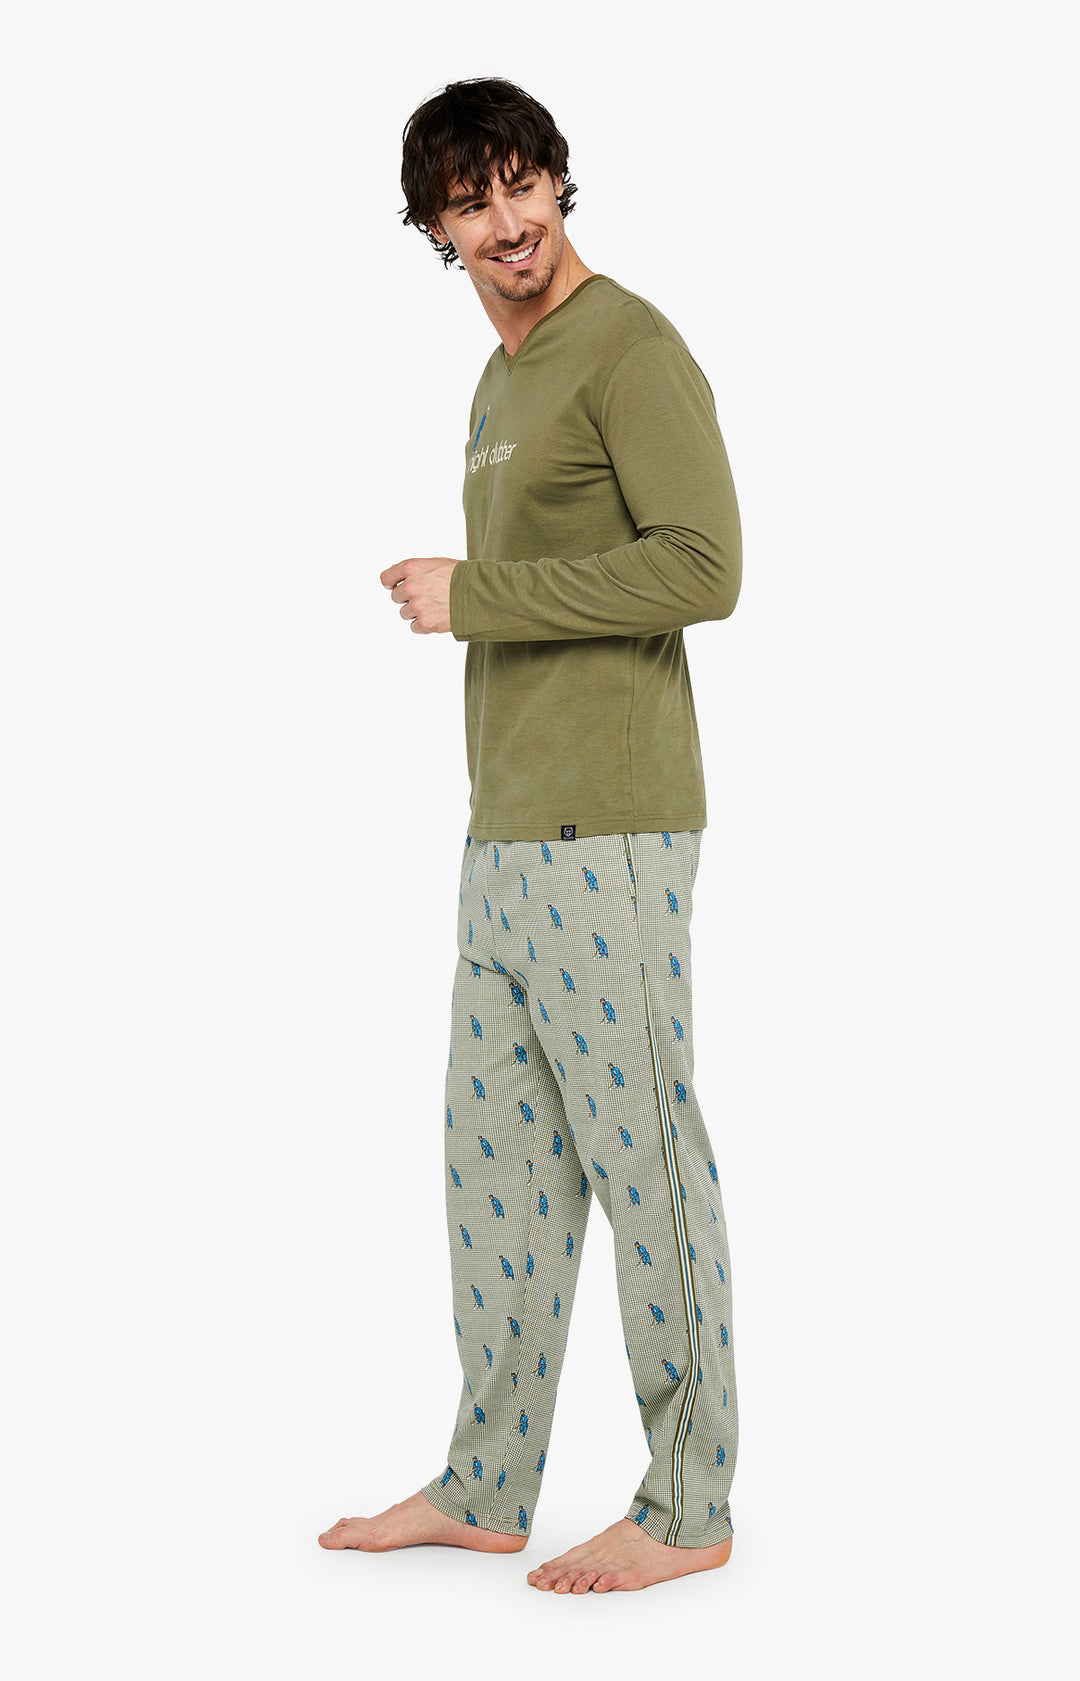 Pyjama Homme | Zac